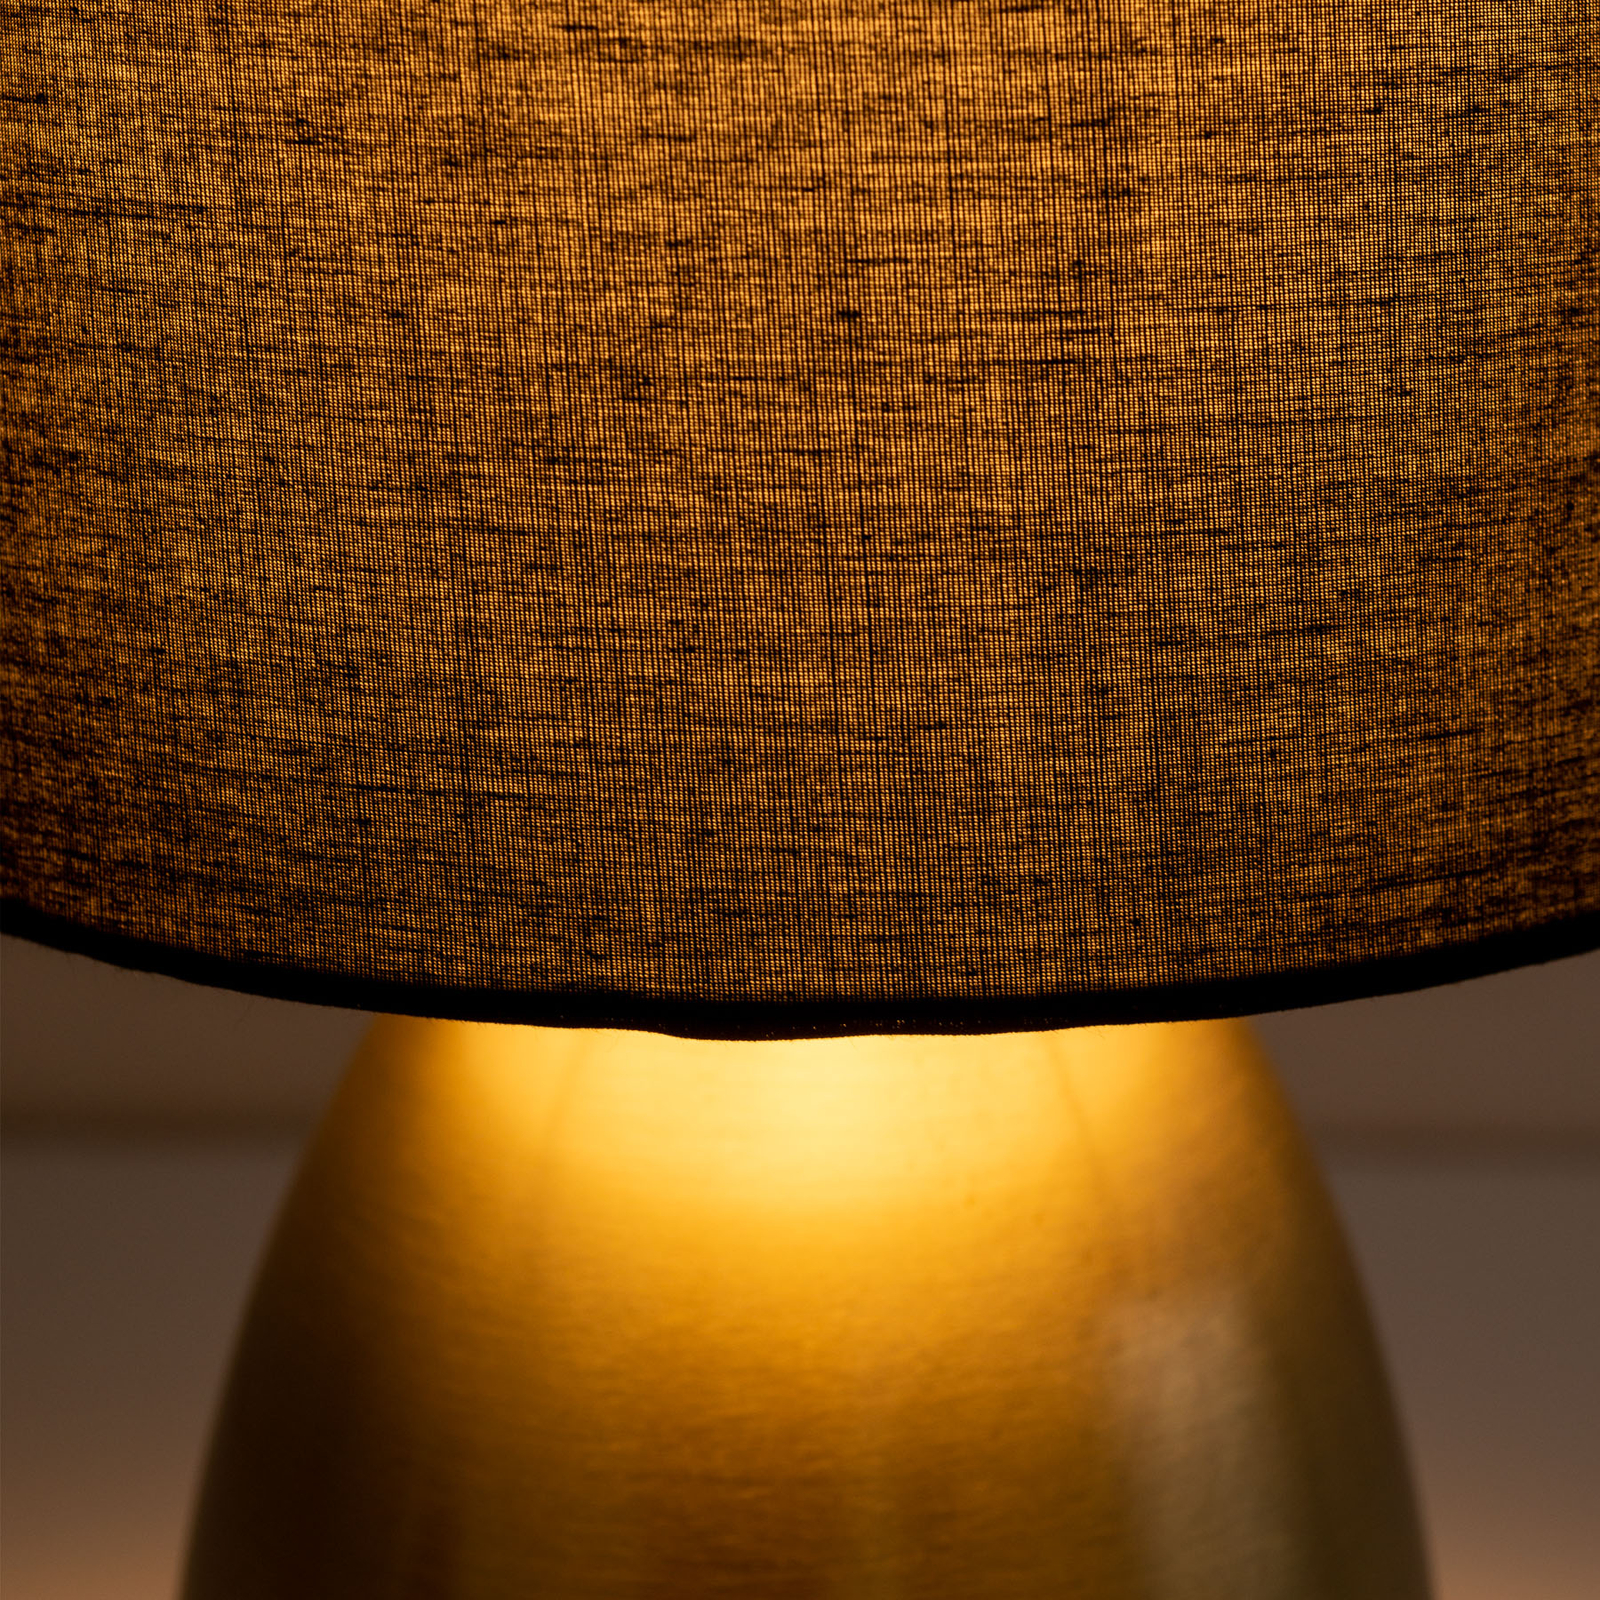 Aurum lámpa, textil ernyő, fekete/arany